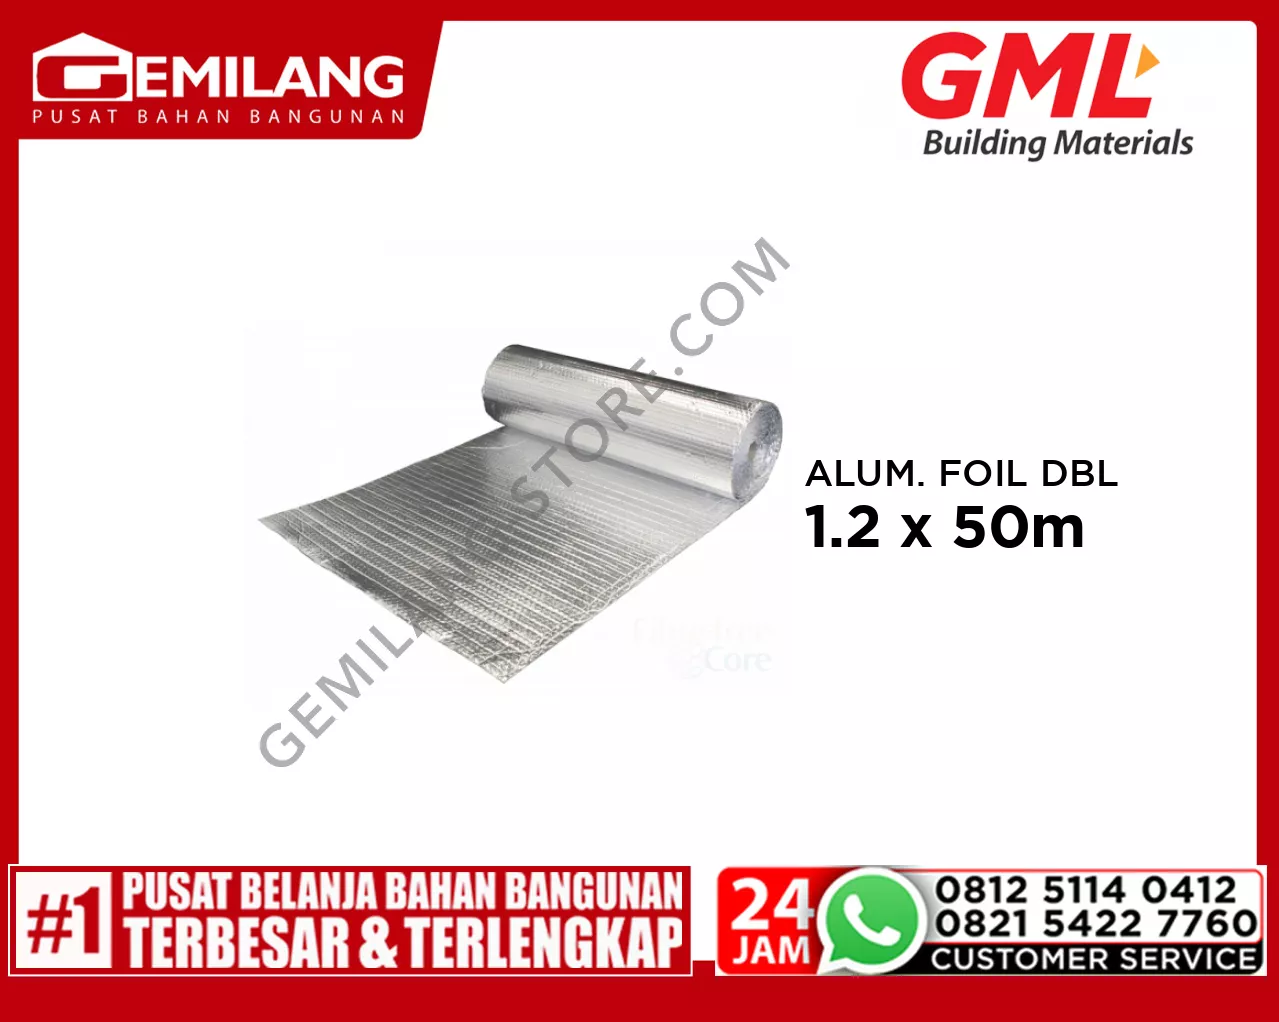 GML ALUMINIUM FOIL DOUBLE GLANGSING 1.2 x 50m /ROLL